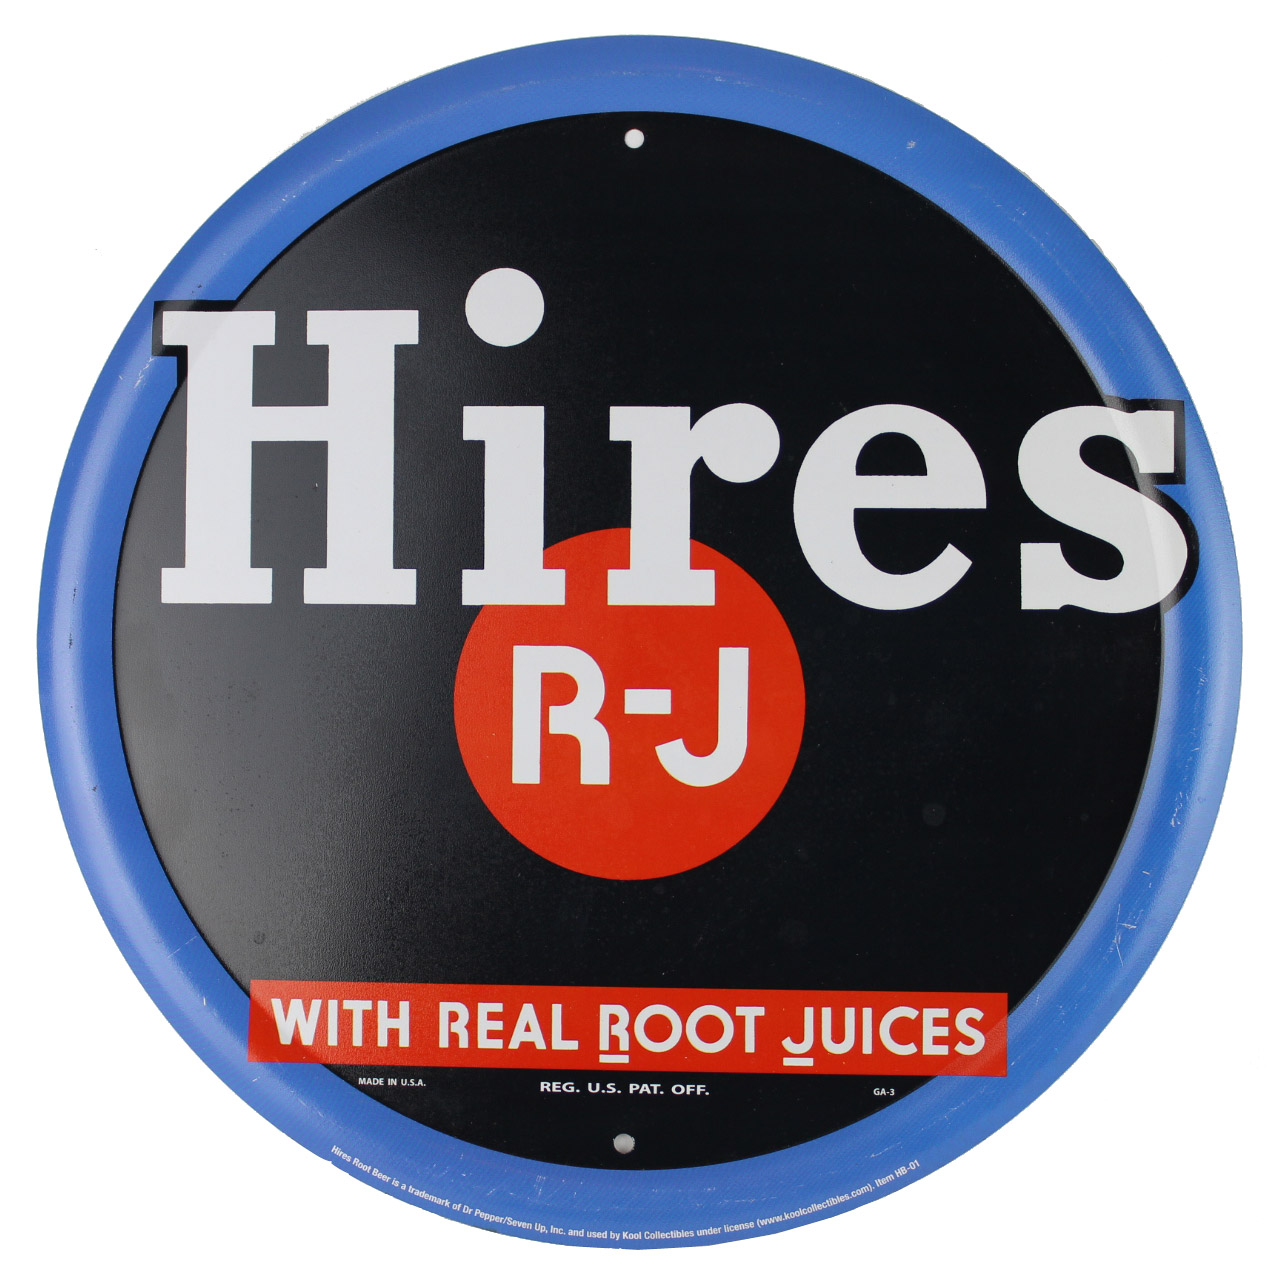 Vintage Metal Sign - Hires R-J Real Root Juices Root Beer